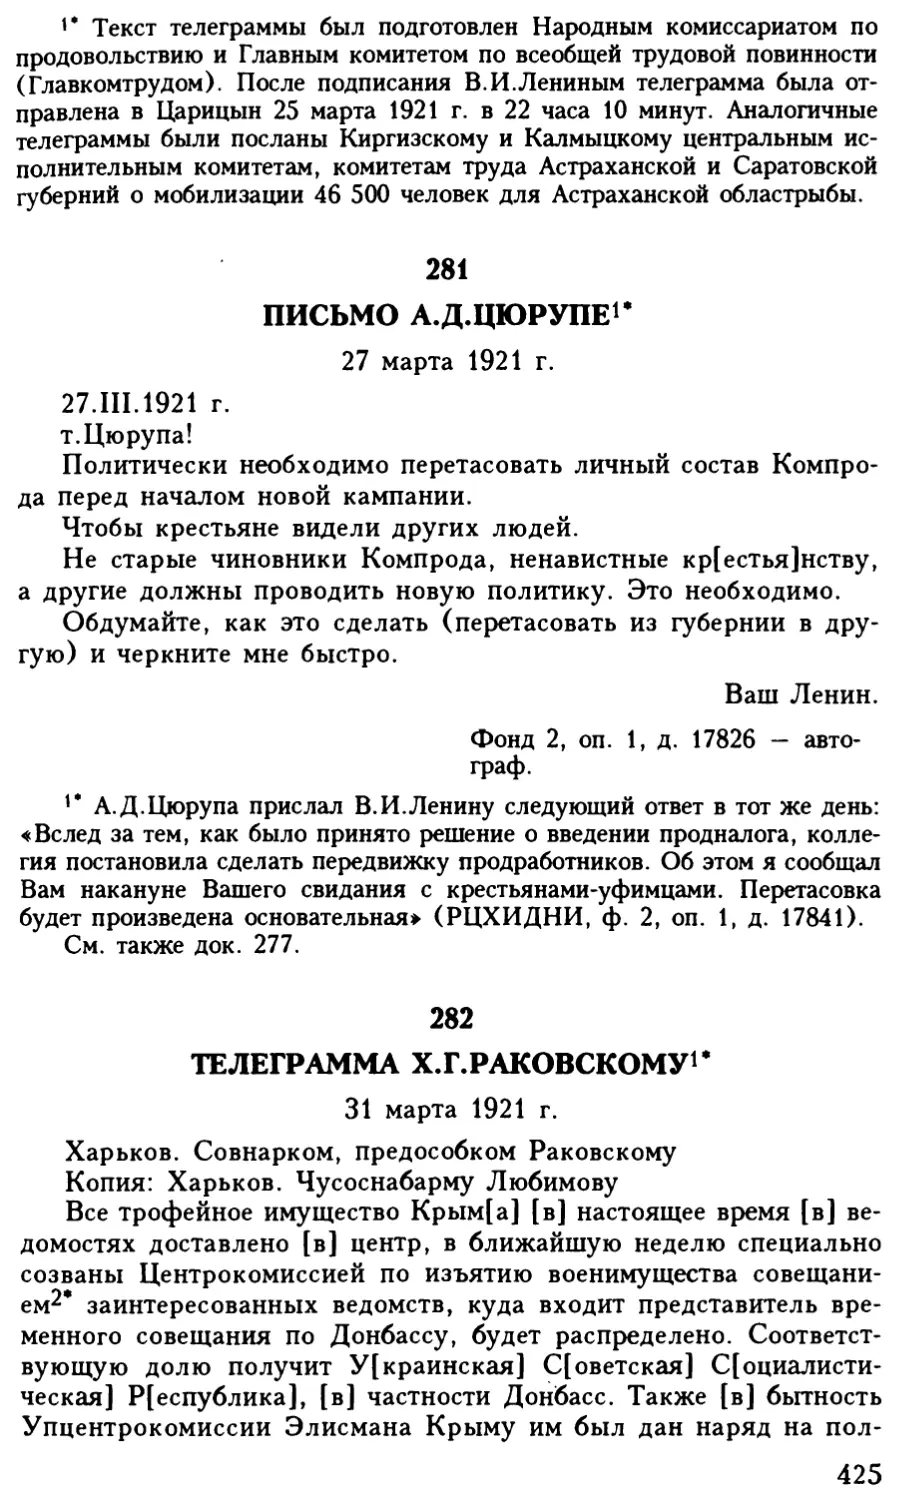 282. Телеграмма X.Г.Раковскому. 31 марта 1921 г